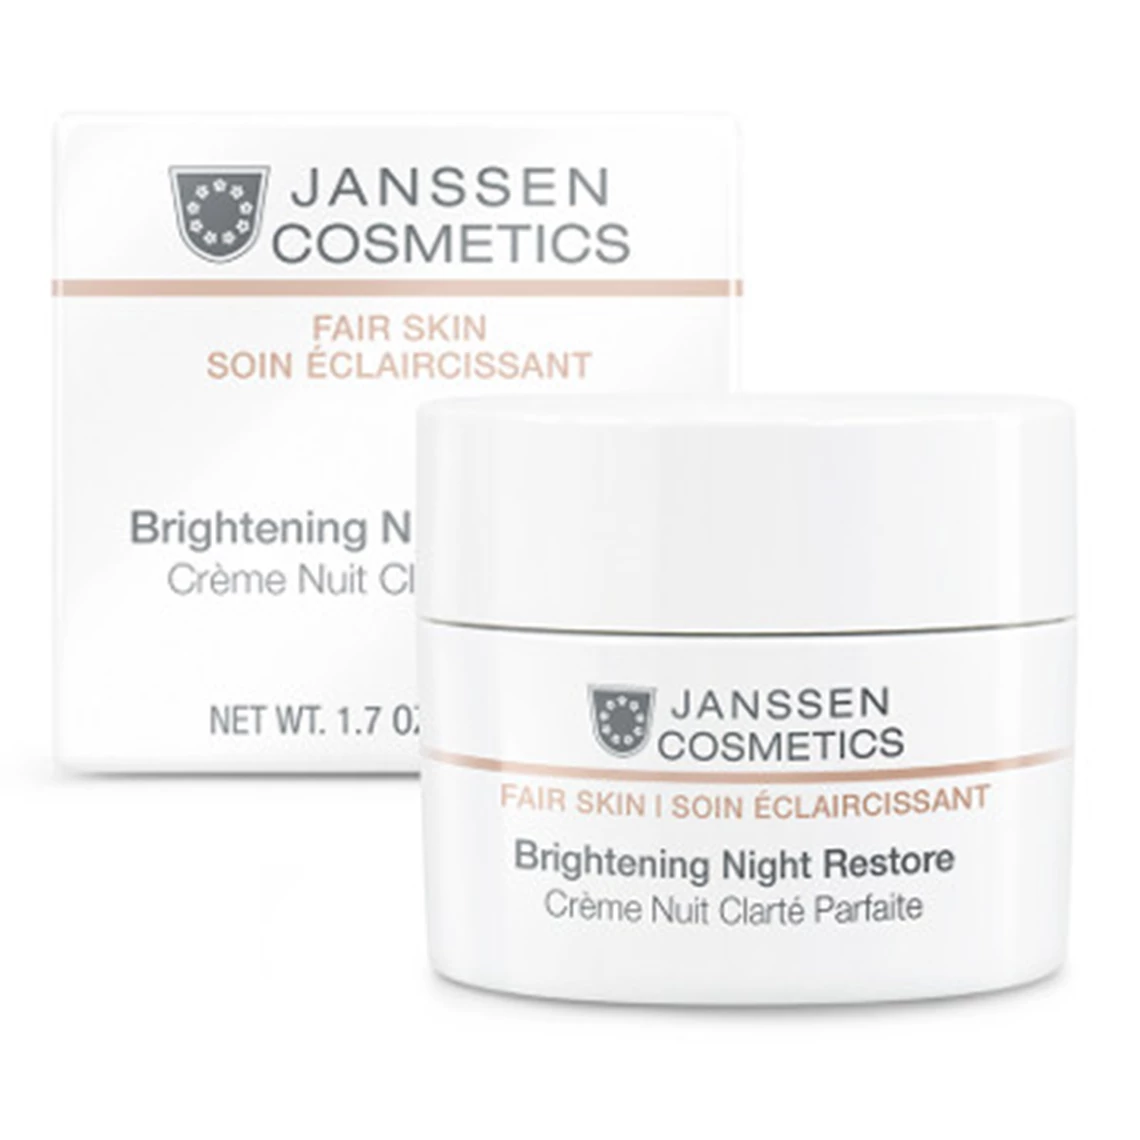 Brightening Night Restore by Janssen Cosmetics